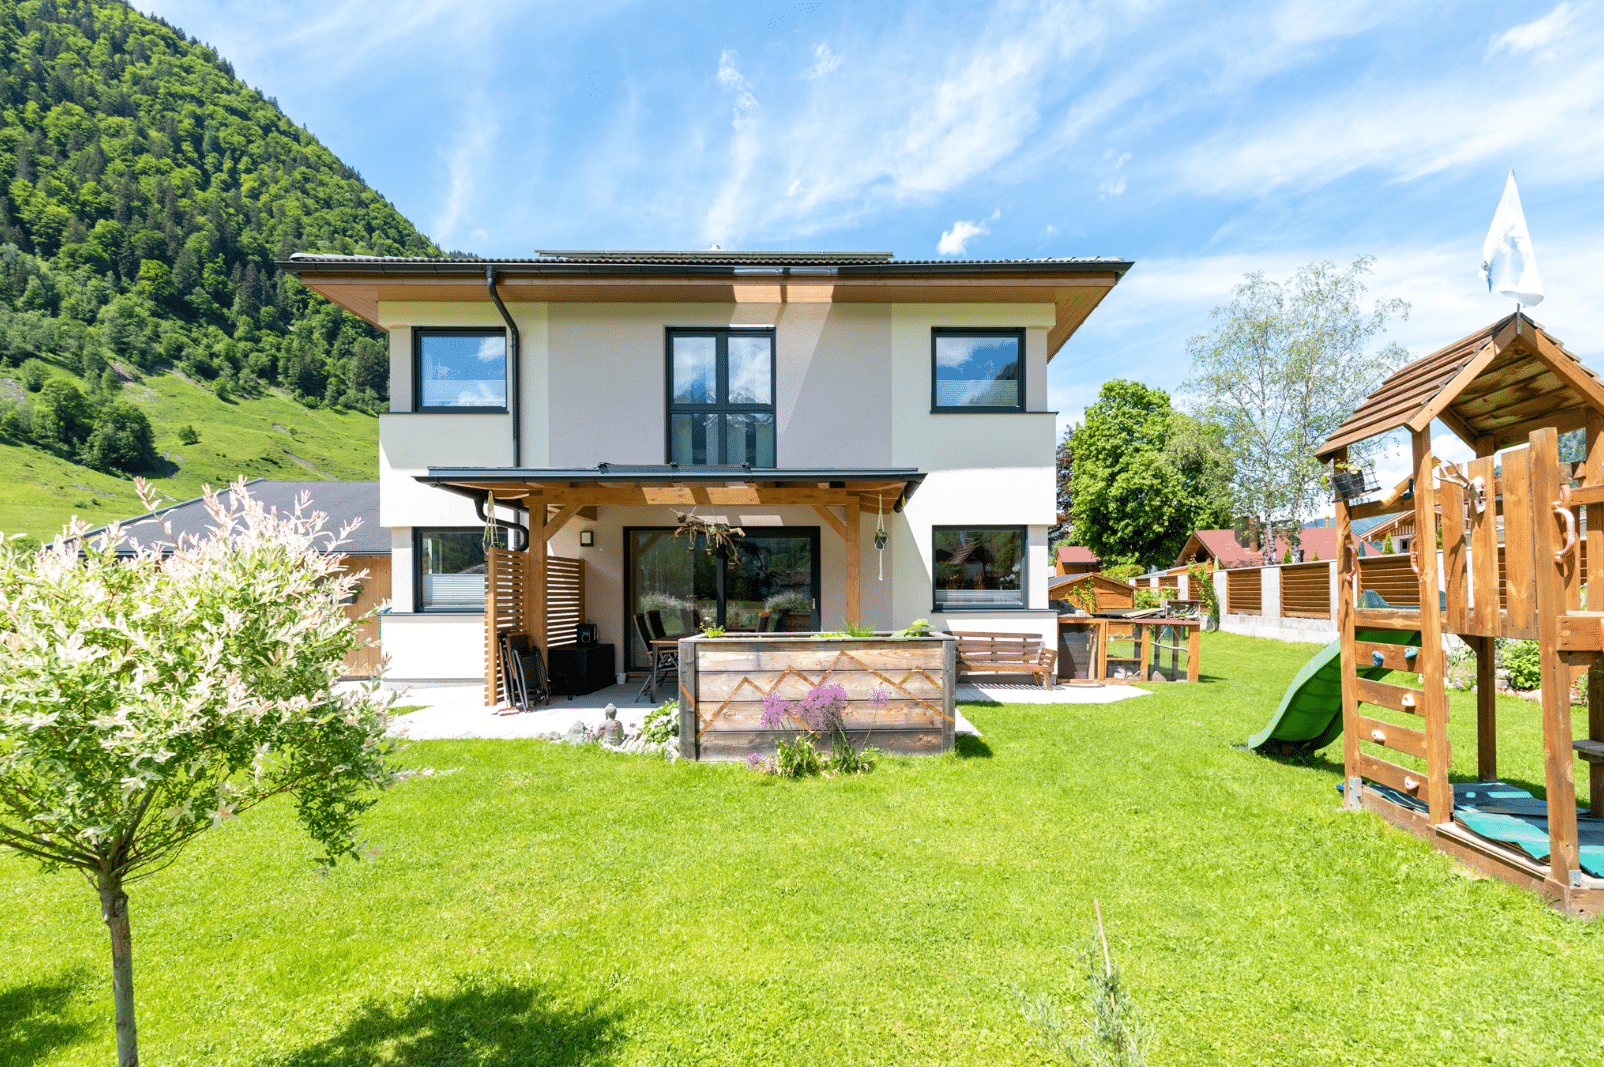 Hartl Haus zeigt ein helles Einfamilienhaus im Grünen, mit einem Spielplatz aus Holz und grüner Rutsche, einem Hochbeet und überdachter Terrasse.